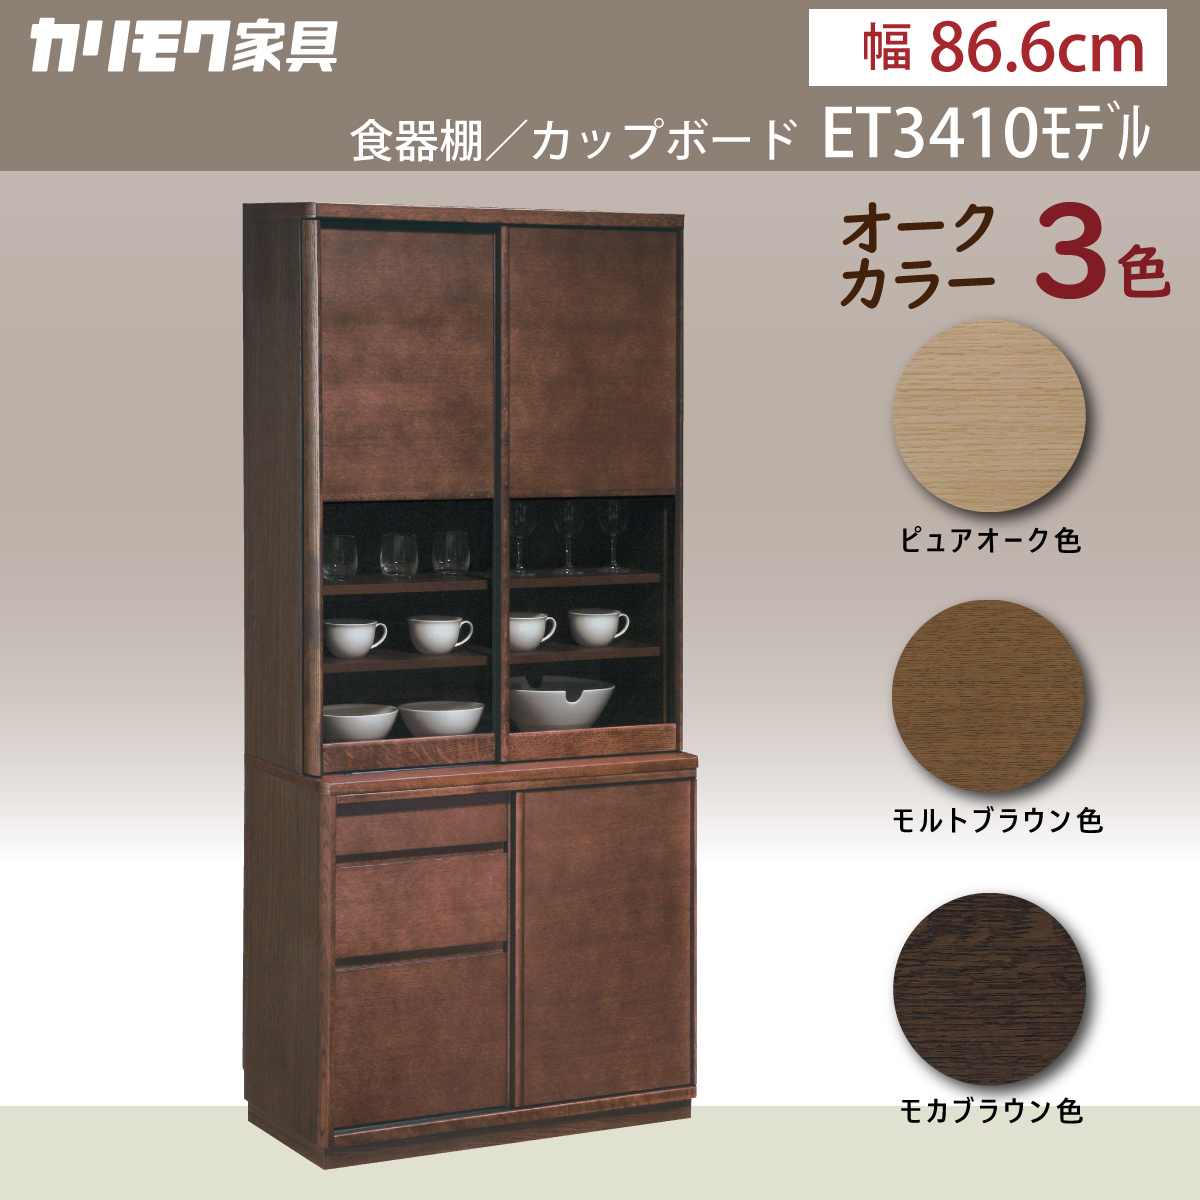 カリモク 食器棚 ET3410 幅86.6cm 引き戸 オーク材 木製 カップボード 完成品 おしゃれ 収納 耐震対策 シンプル 国産 karimoku